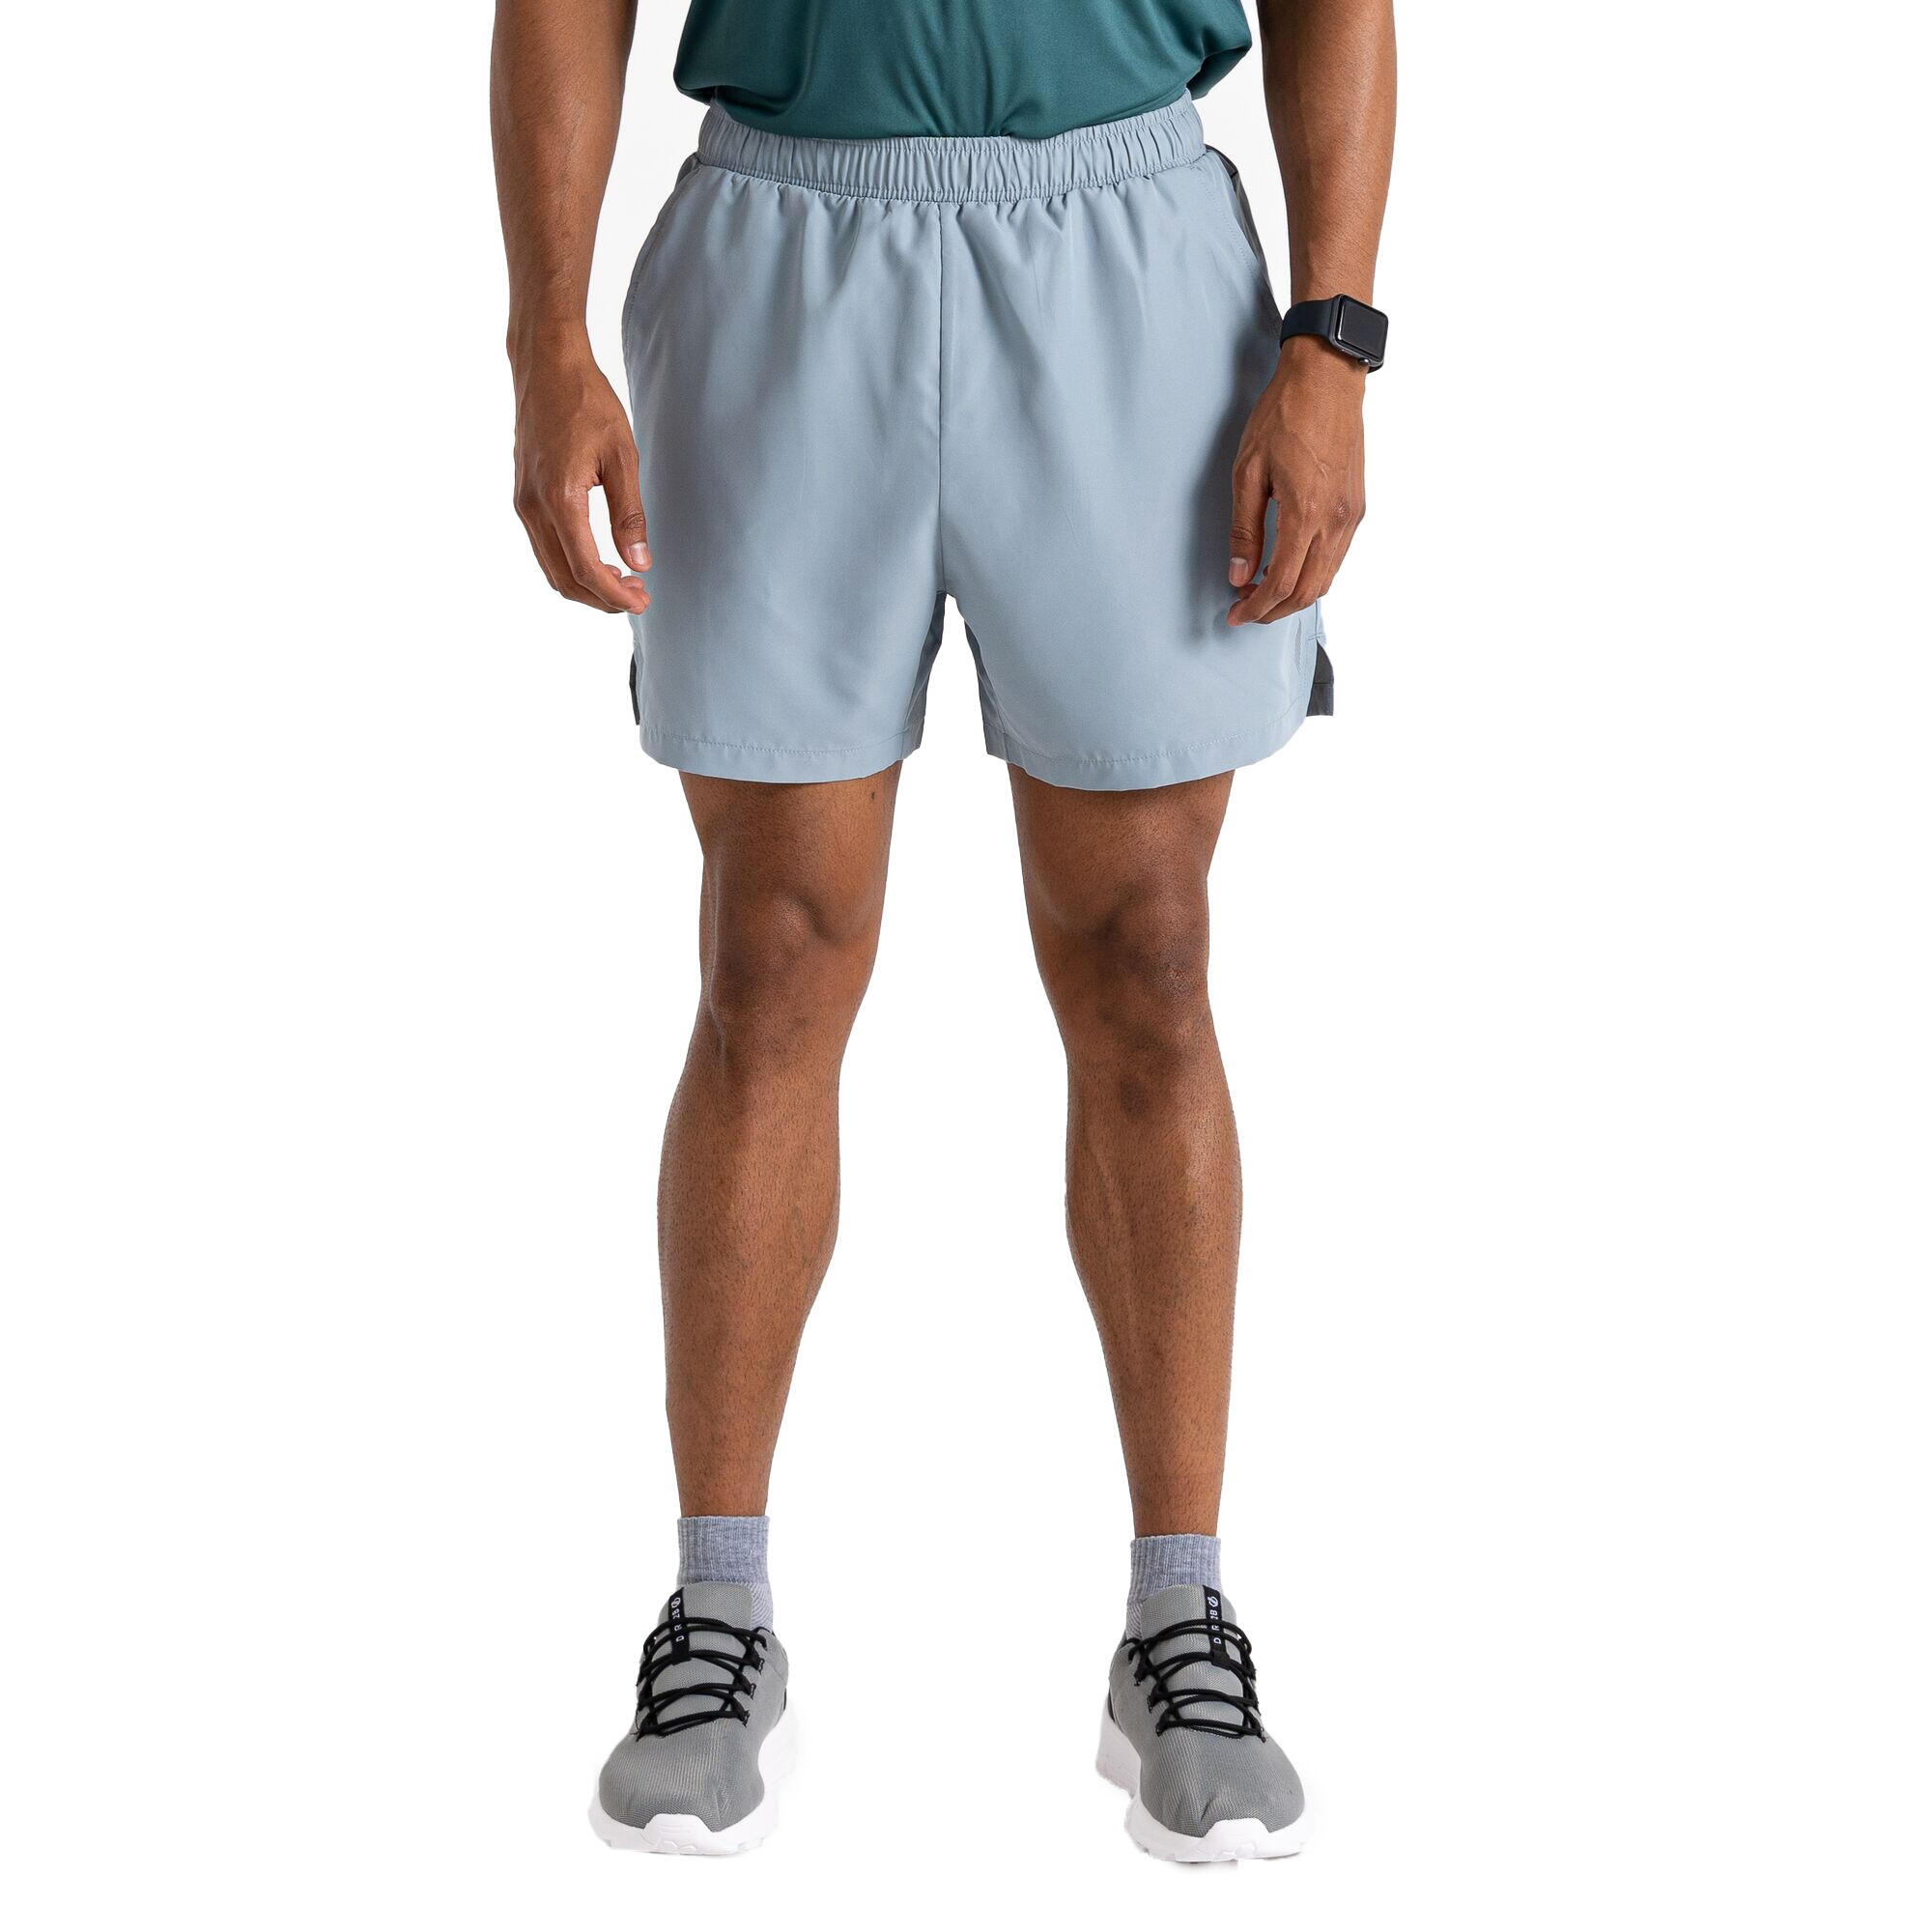 Mens Gym Shorts (Slate) 4/5